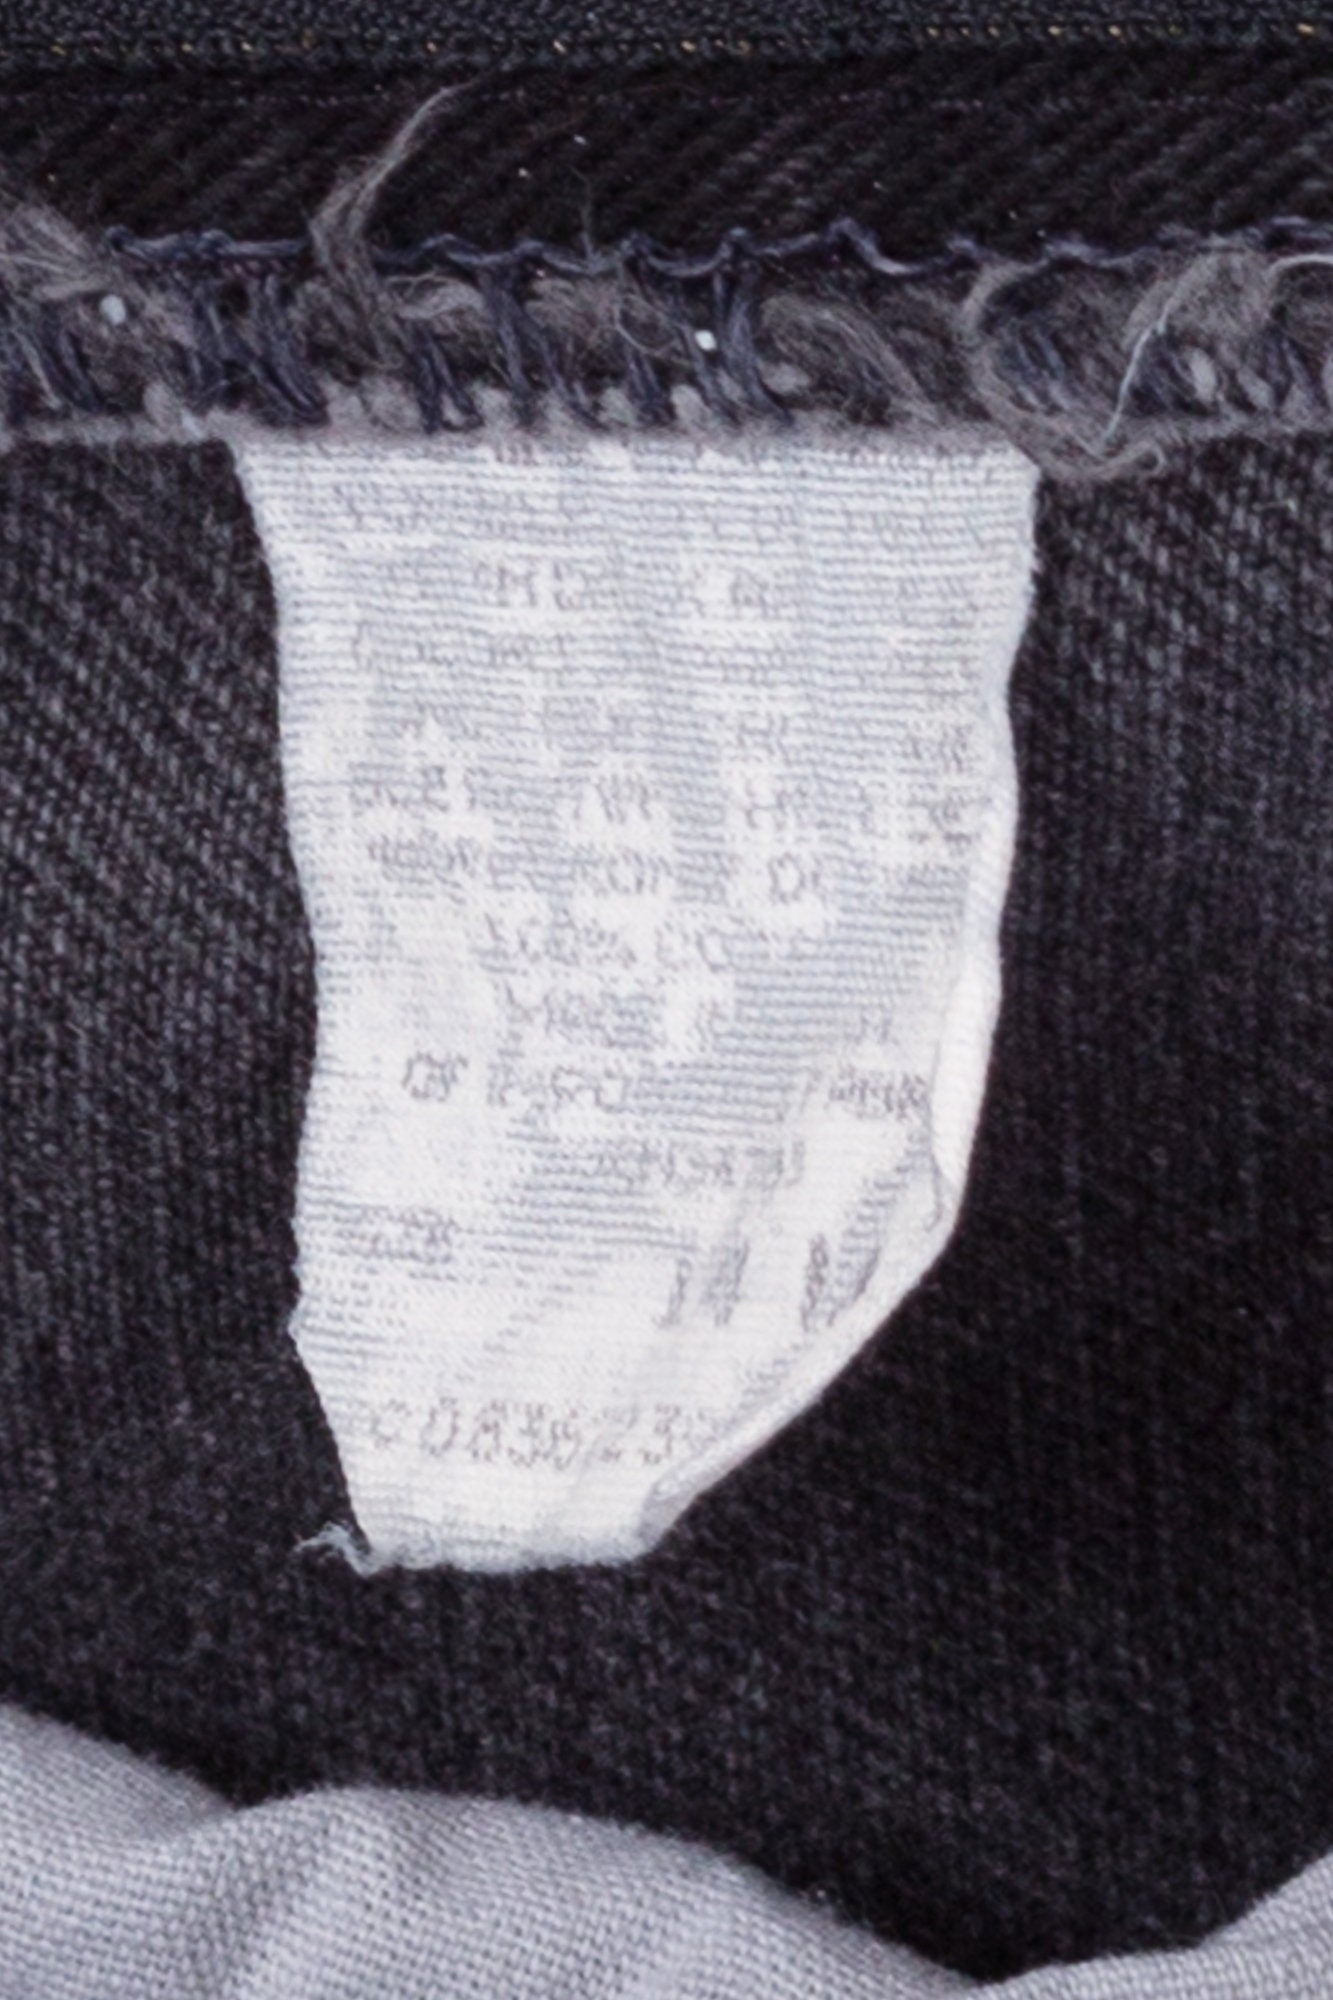 Vintage Lee Faded Black Jeans - Large, 31" 